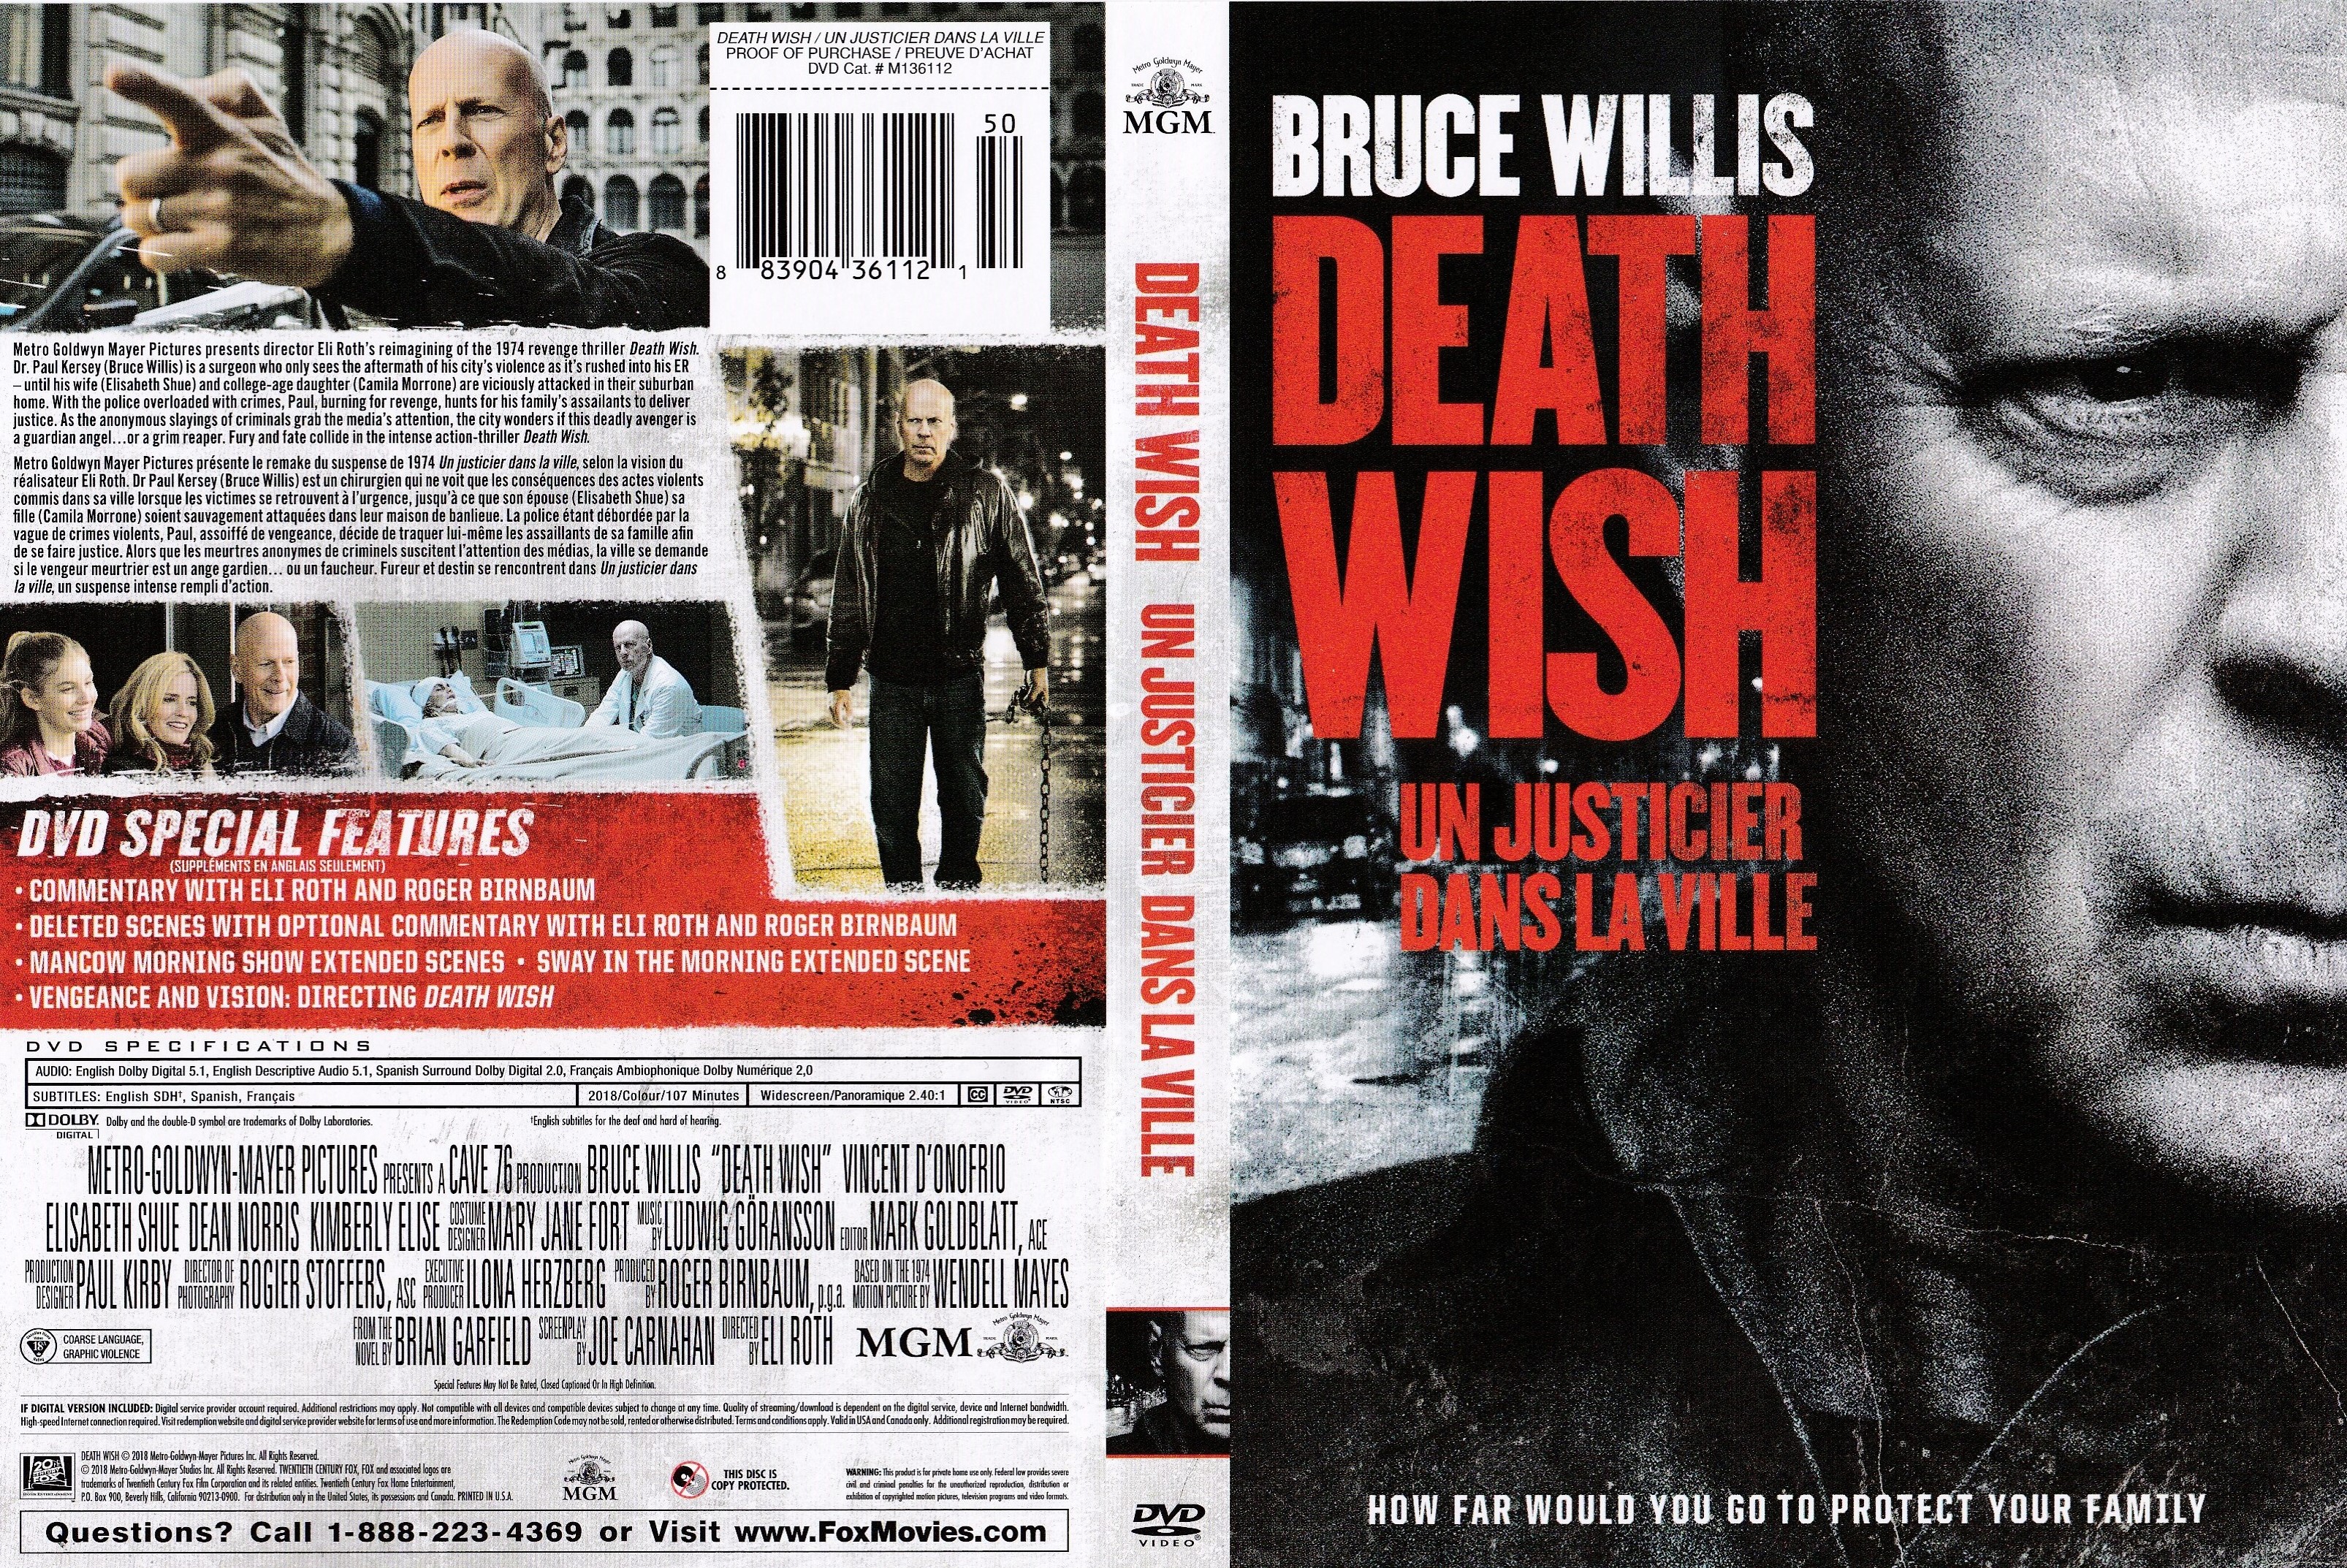 Jaquette DVD Un justicier dans la ville - Death wish (2018) (canadienne)